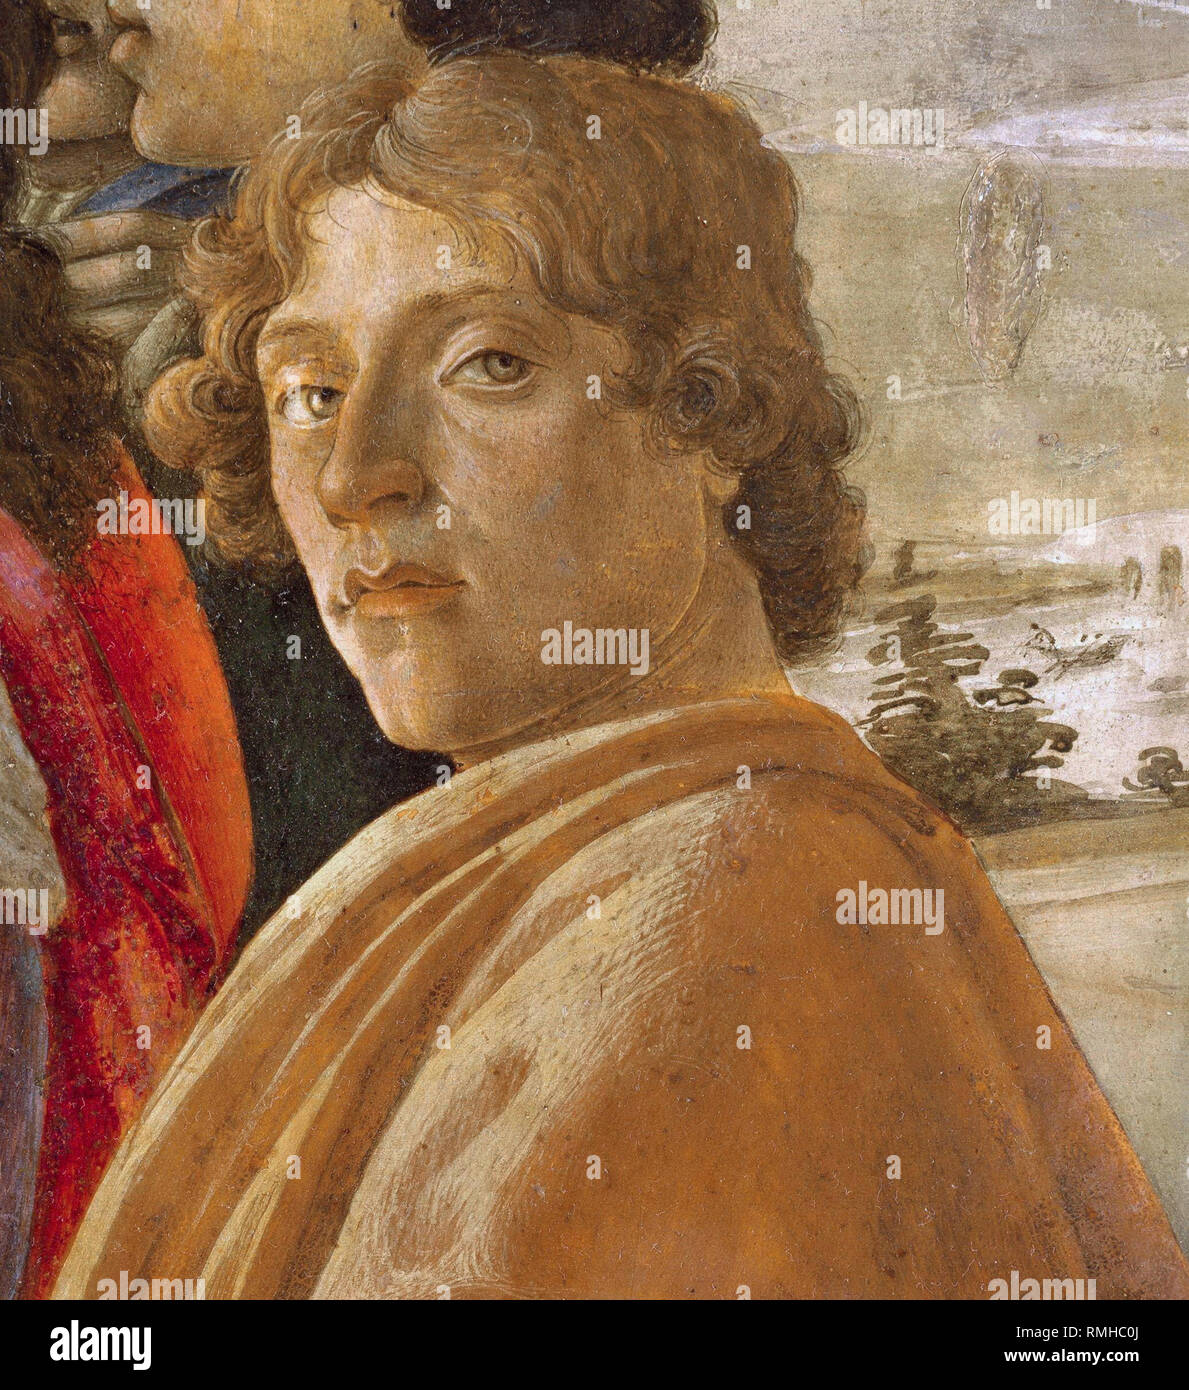 Botticelli, Alessandro di Mariano di Vanni Filipepi (1445 - 1510), Sandro Botticelli, artiste peintre italien Banque D'Images